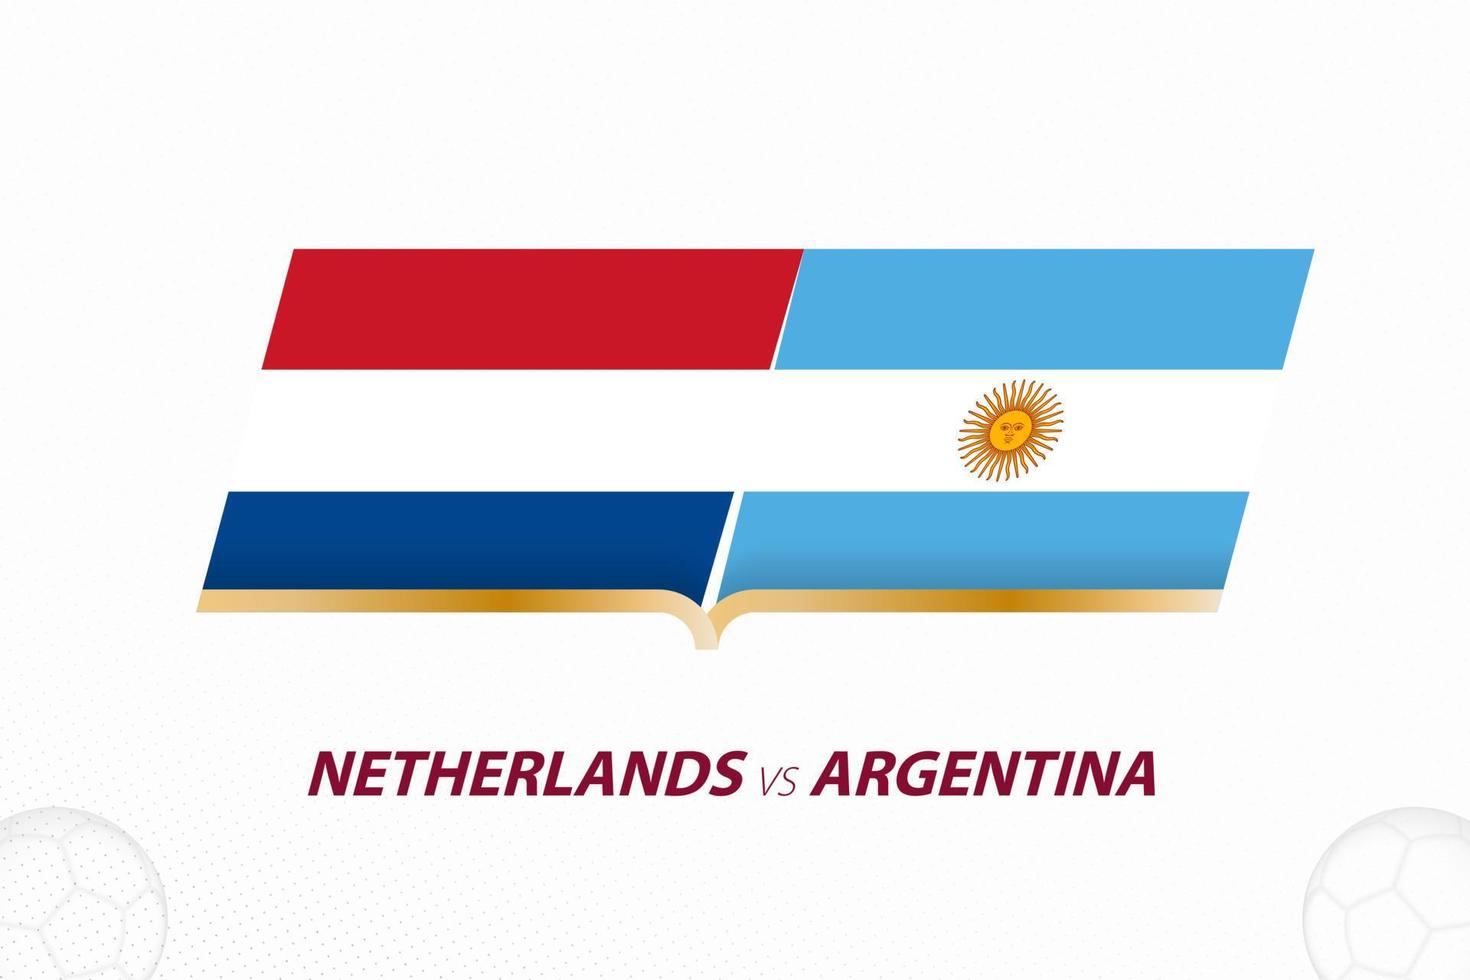 holanda vs argentina en competencia de futbol, cuartos de final. versus icono en el fondo del fútbol. vector